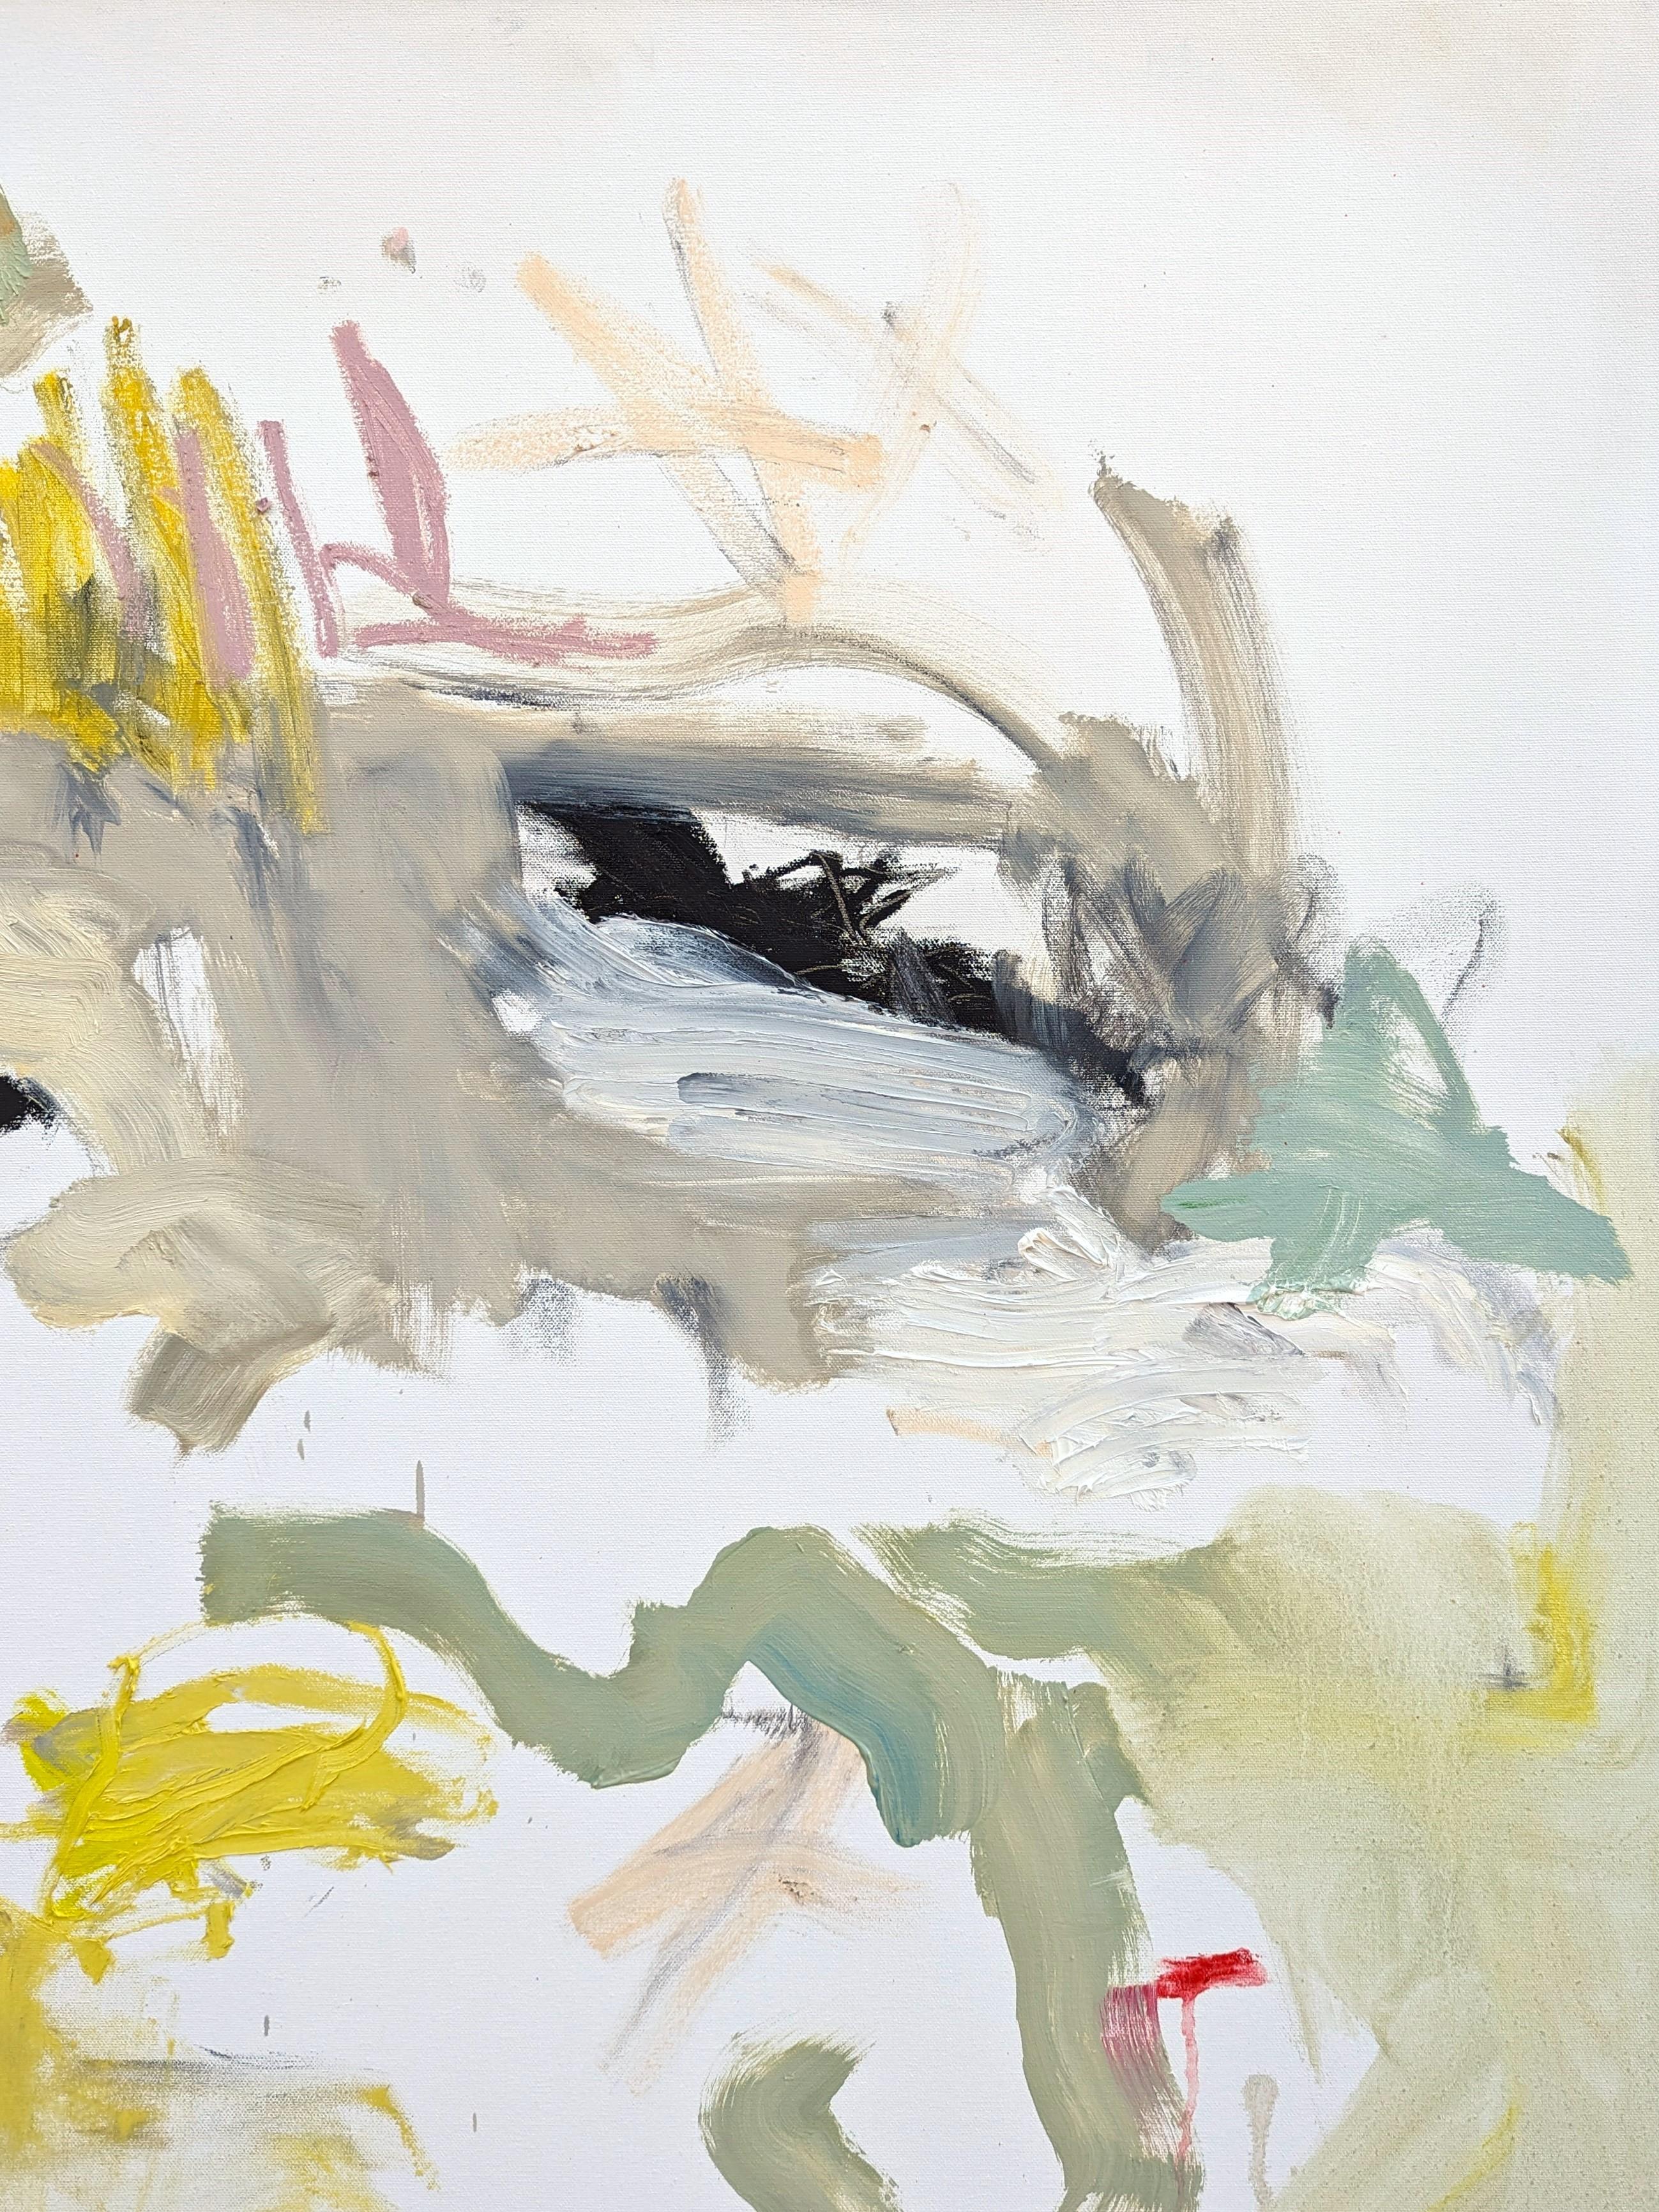 Peinture à l'huile expressionniste abstraite de l'artiste contemporain de Houston Benji Stiles. L'œuvre présente des marques gestuelles en orange, jaune et vert pastel sur un fond blanc cassé. Actuellement non encadré, mais des options sont